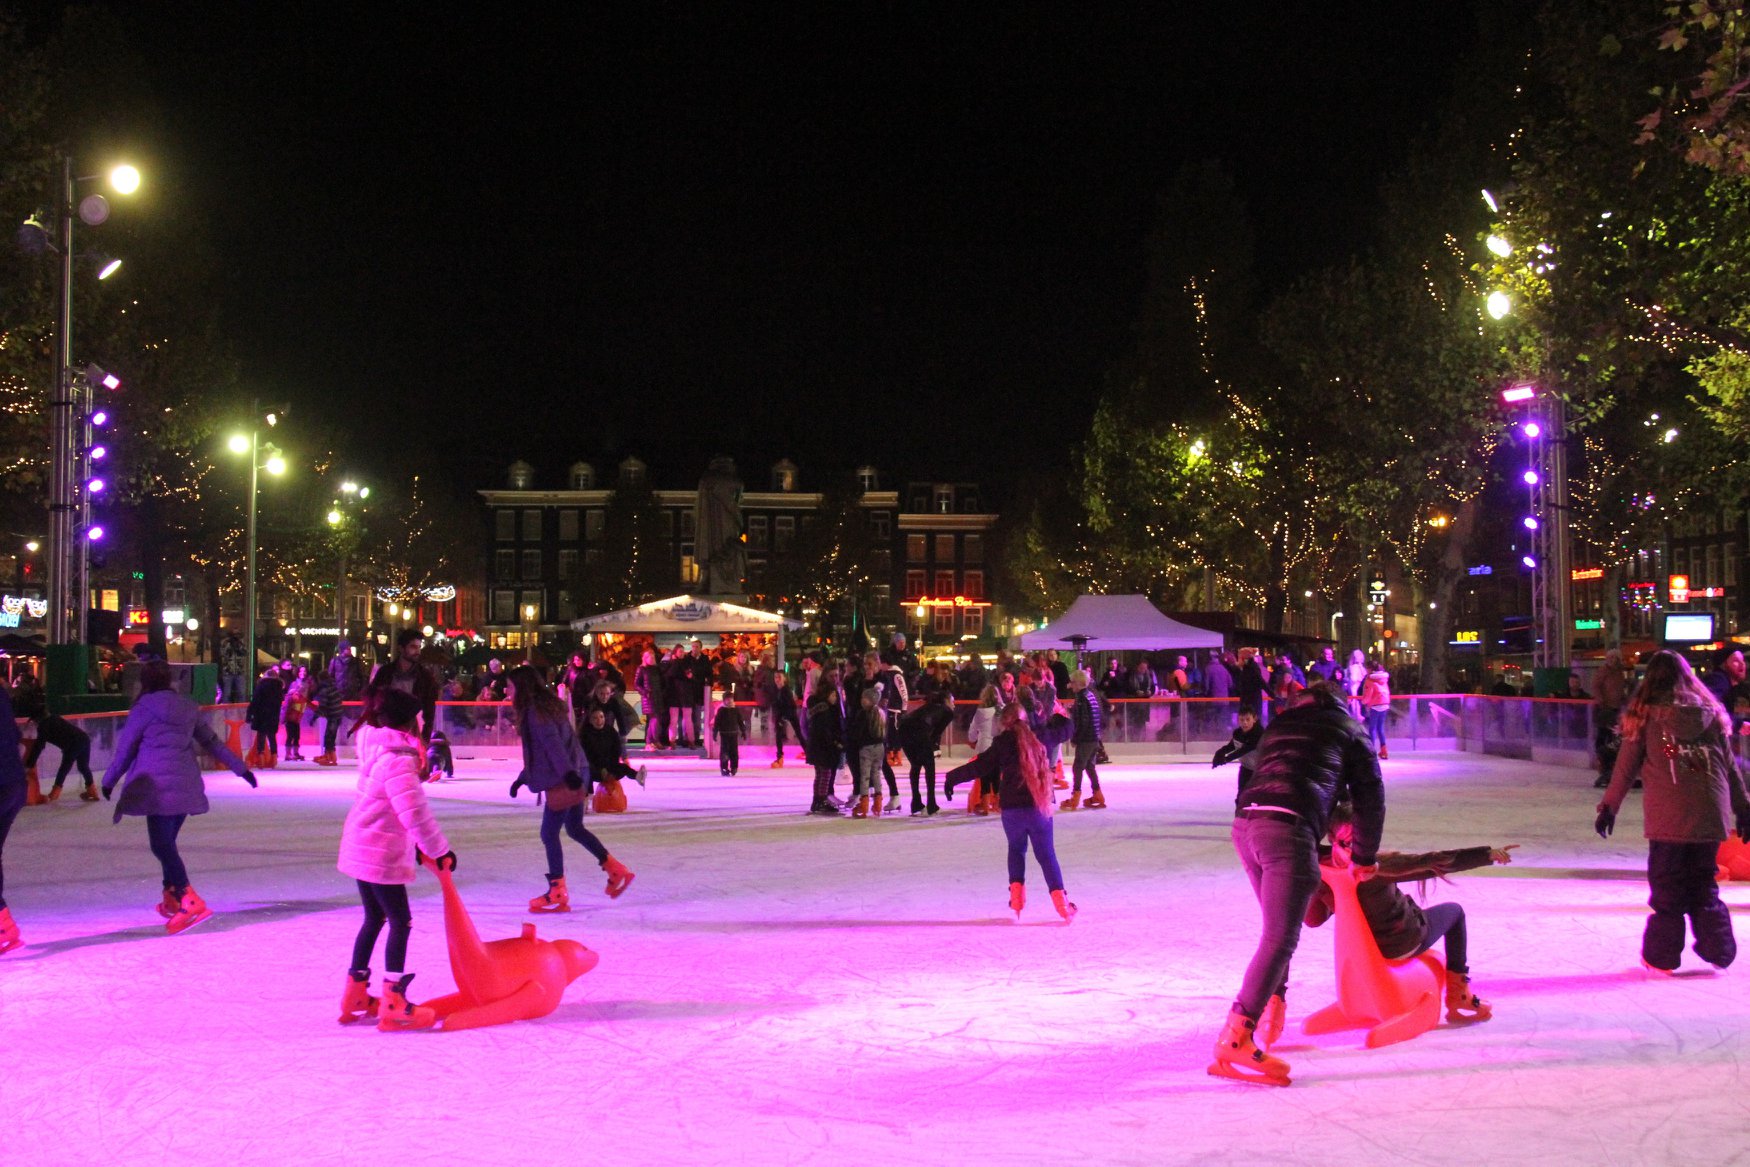 Ice rink Rembrandtplein Amsterdam